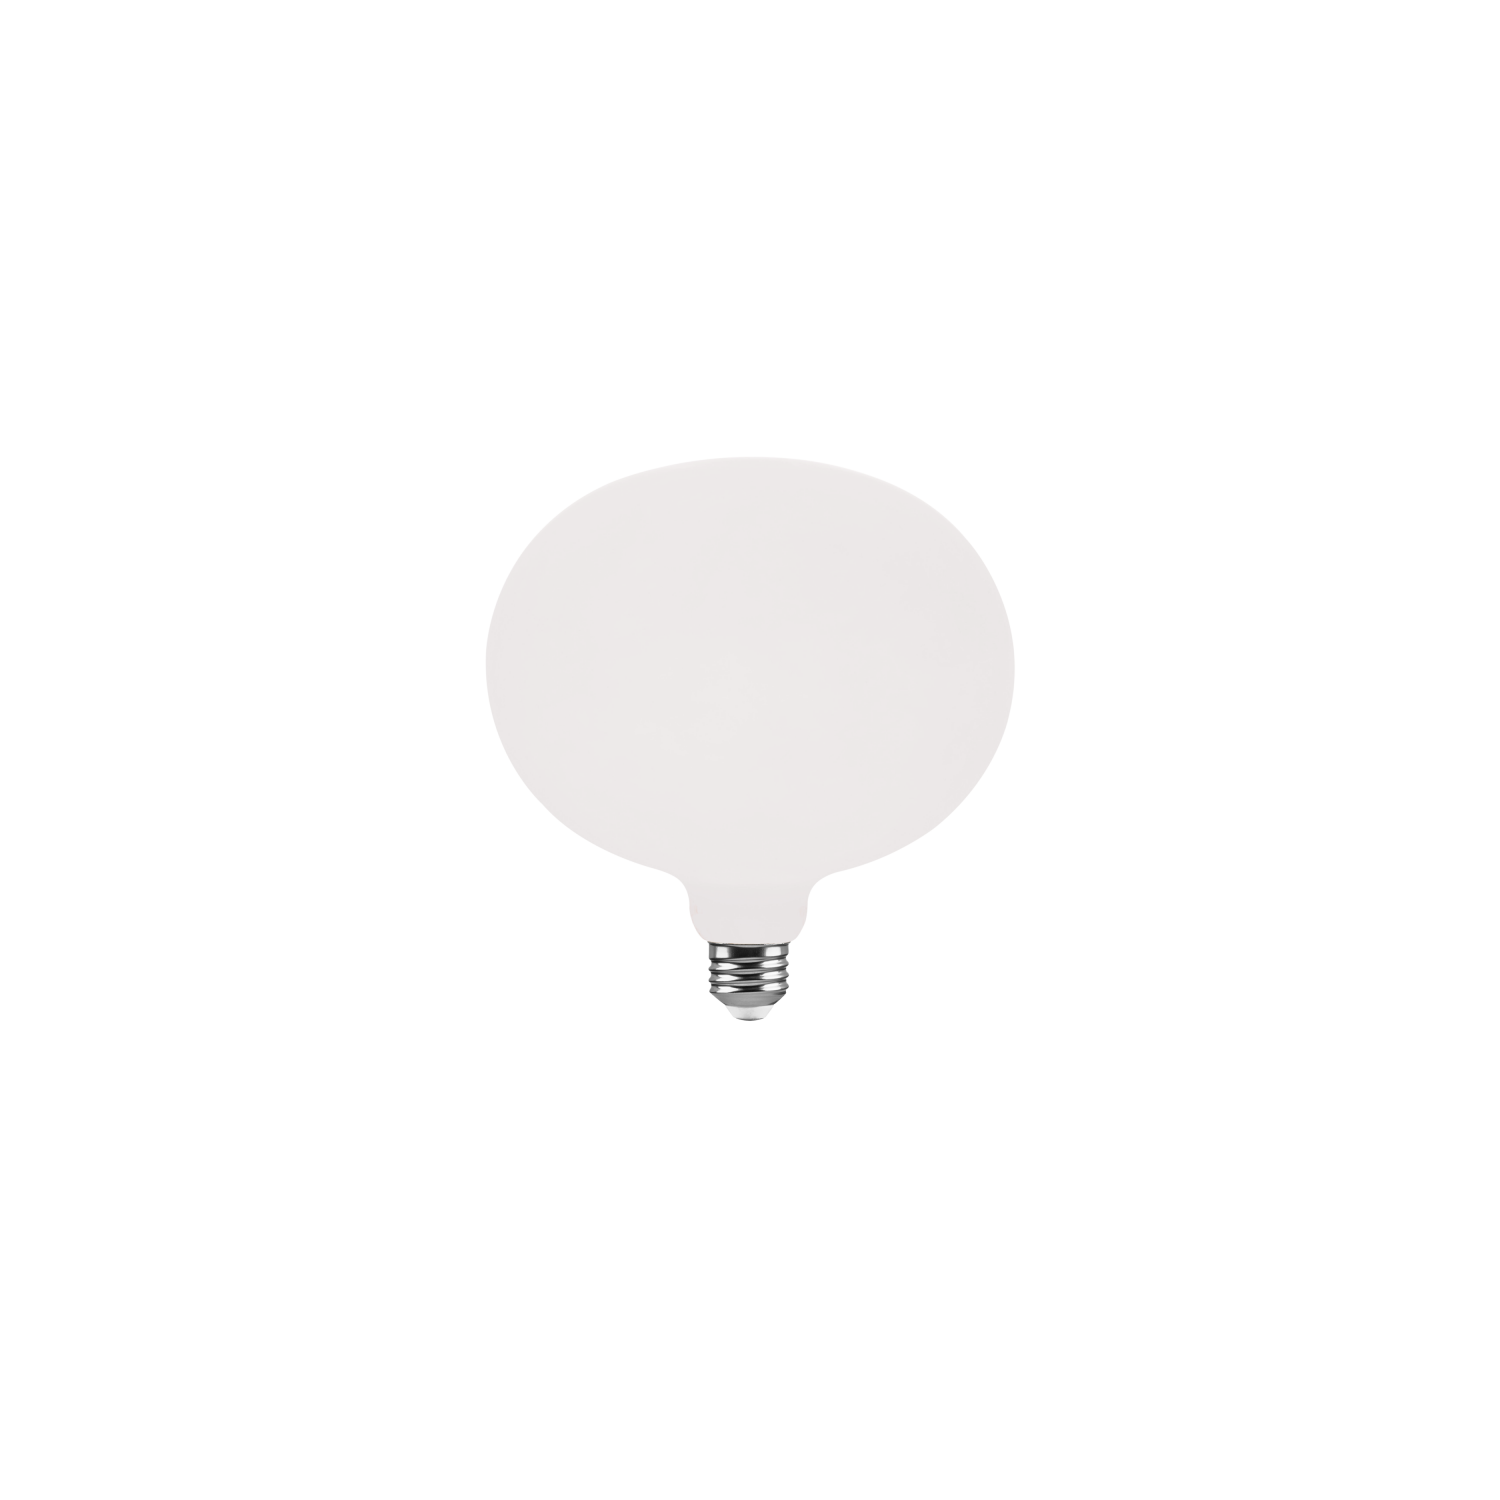 Bombillo LED Delo tipo Porcelana linea Ciaobella de 6W Dimerizable en luz cálida 2700K